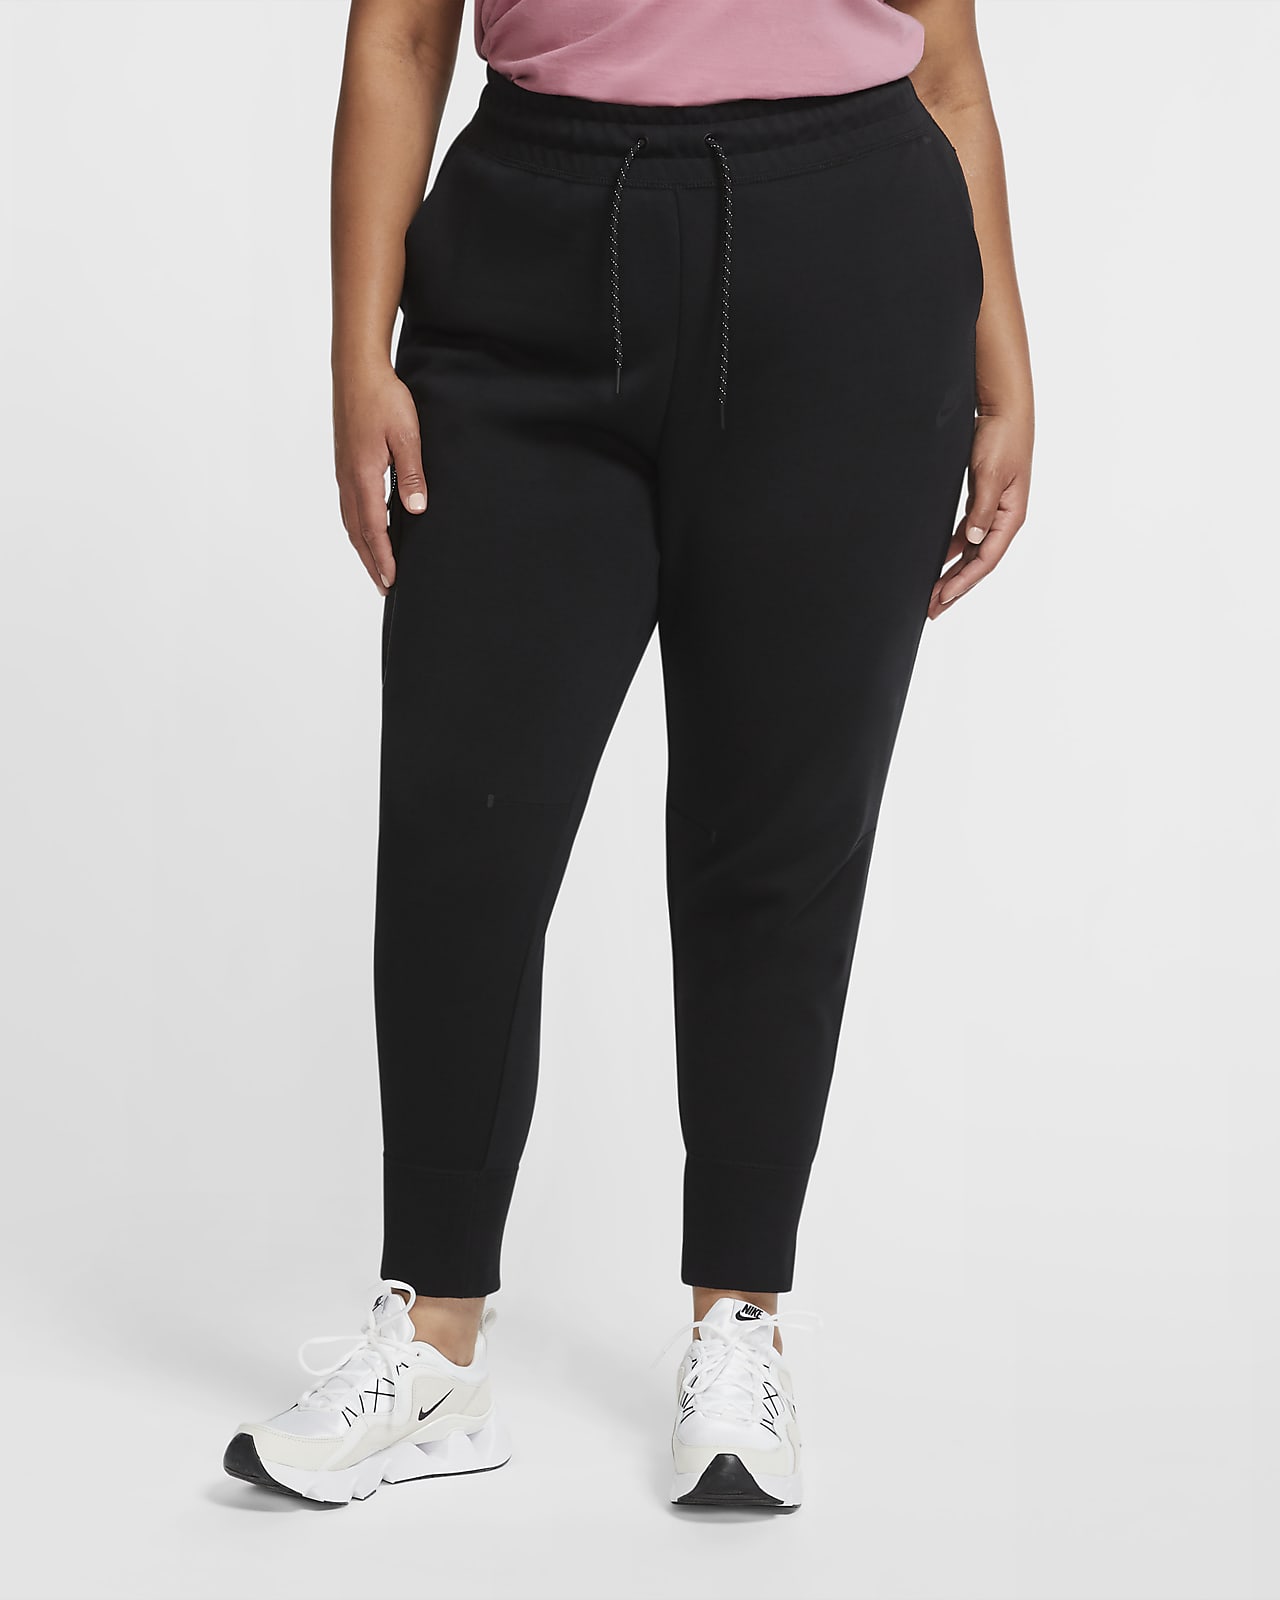 Γυναικείο παντελόνι Nike Sportswear Tech Fleece (μεγάλα μεγέθη)